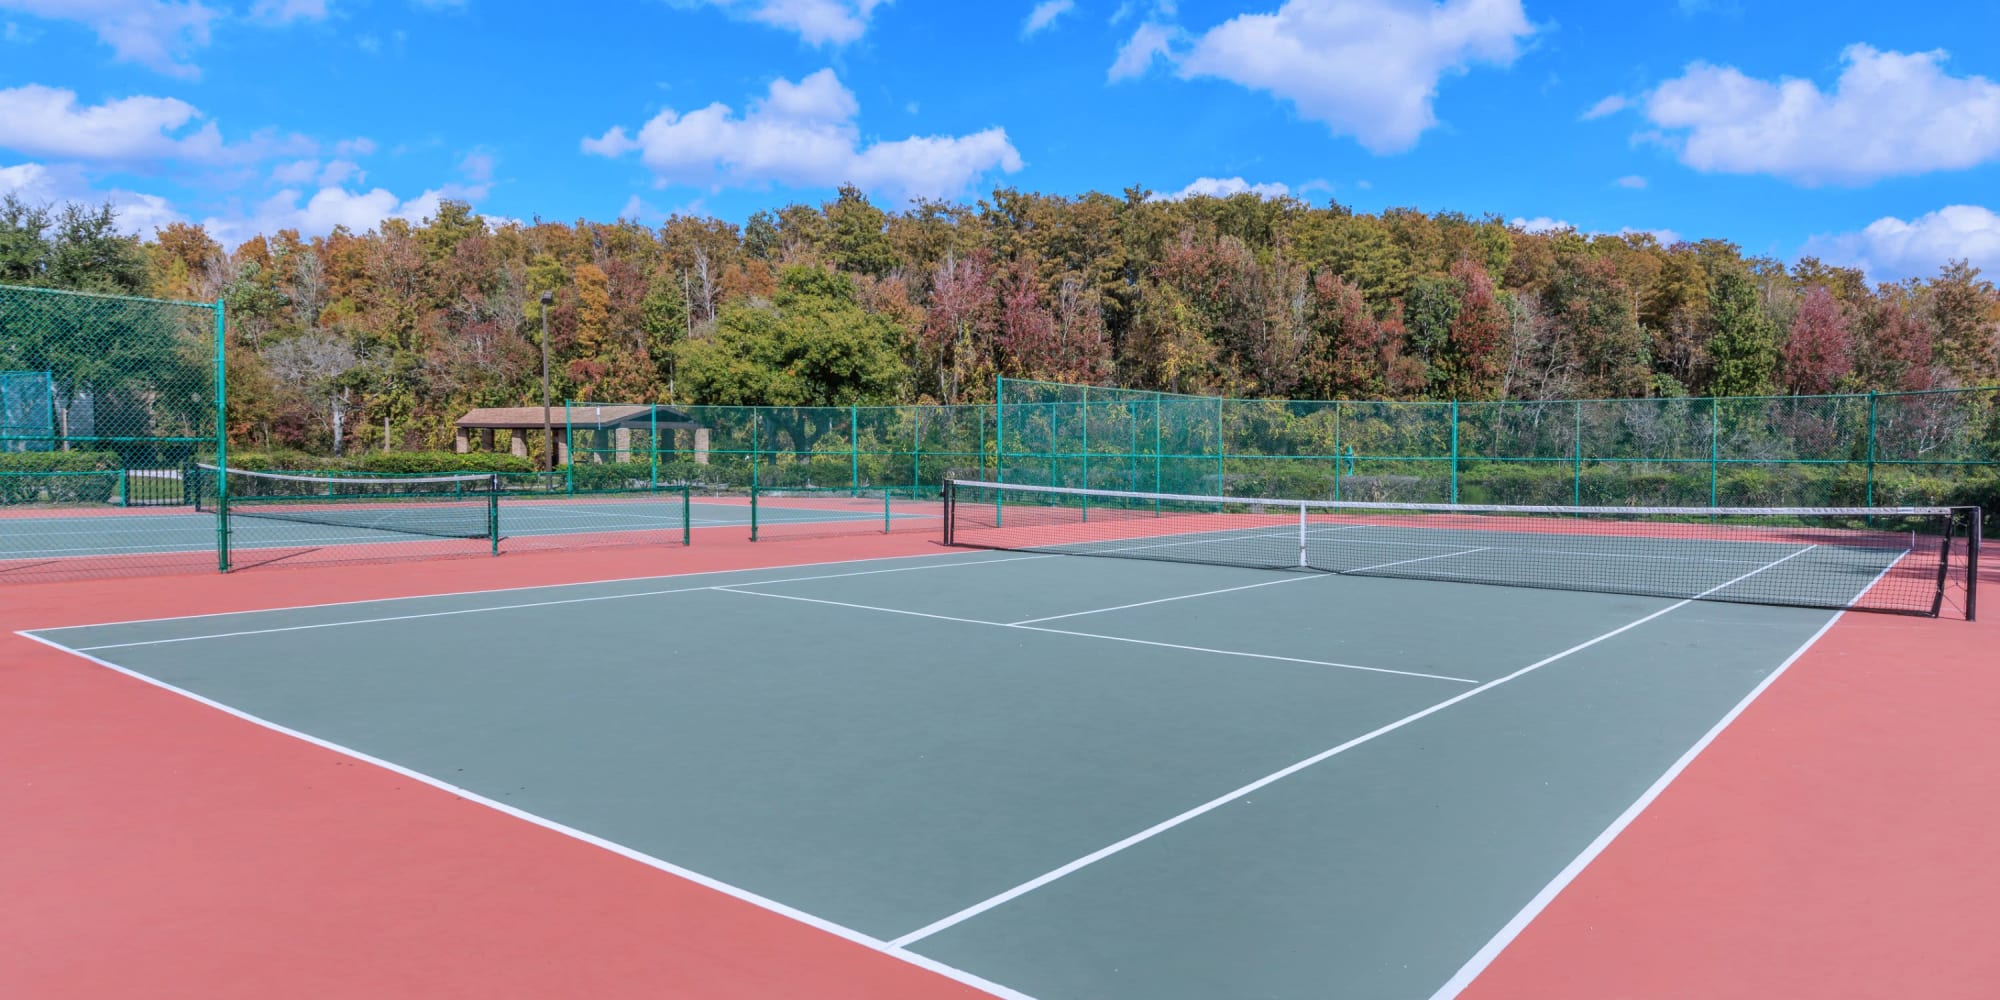 Tennis court at Millenium Cove in Orlando, Florida